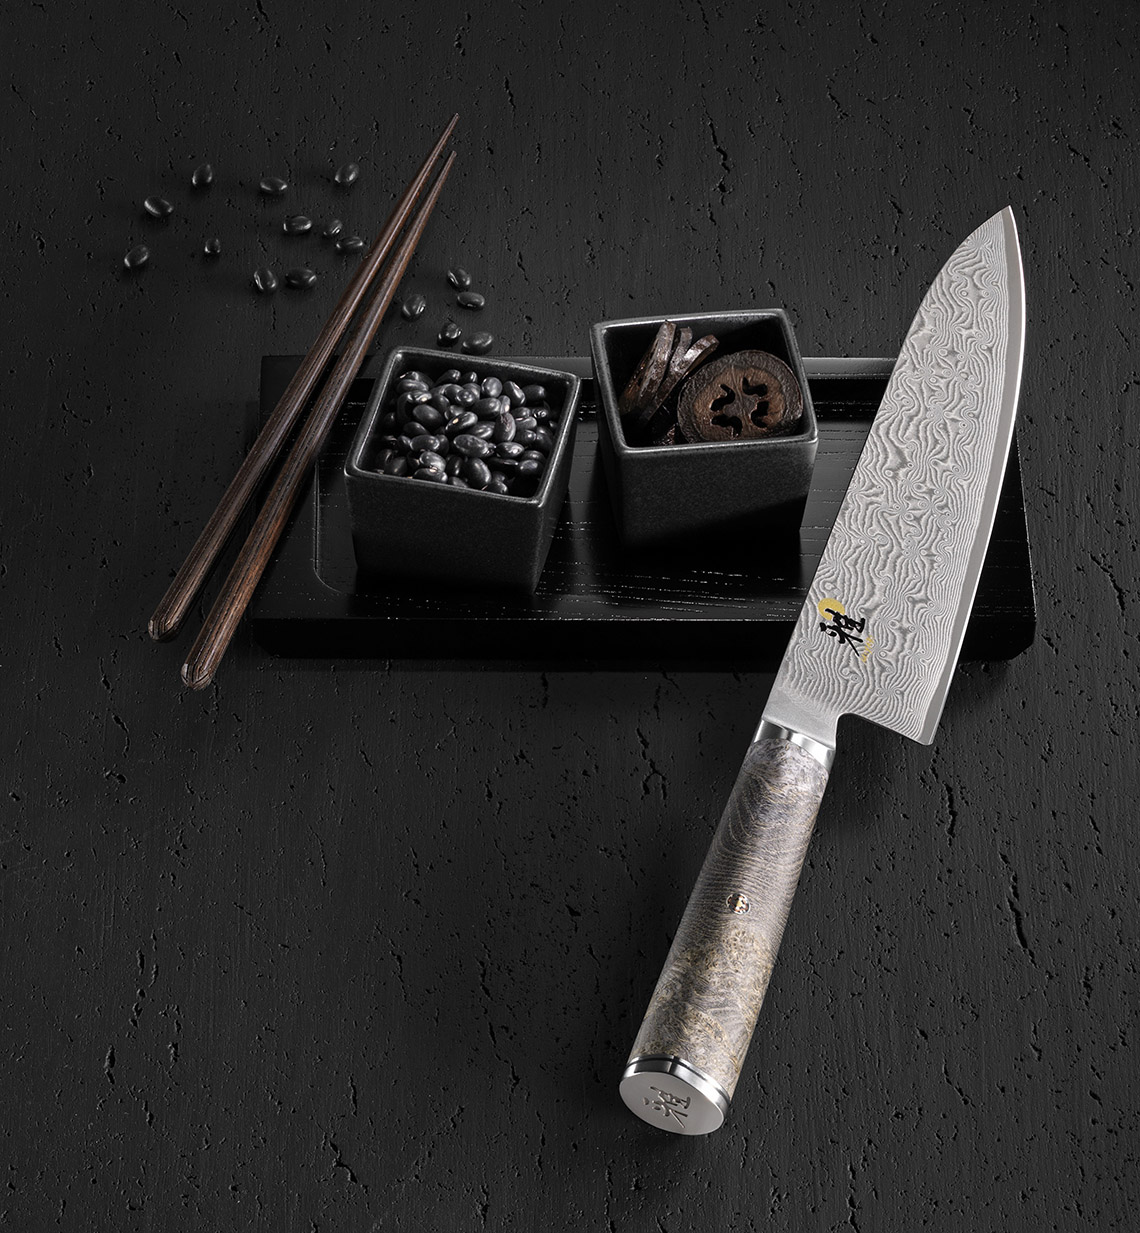 Wielowarstwowe, kute z pietyzmem noże japońskie warto ostrzyć na markowych kamieniach